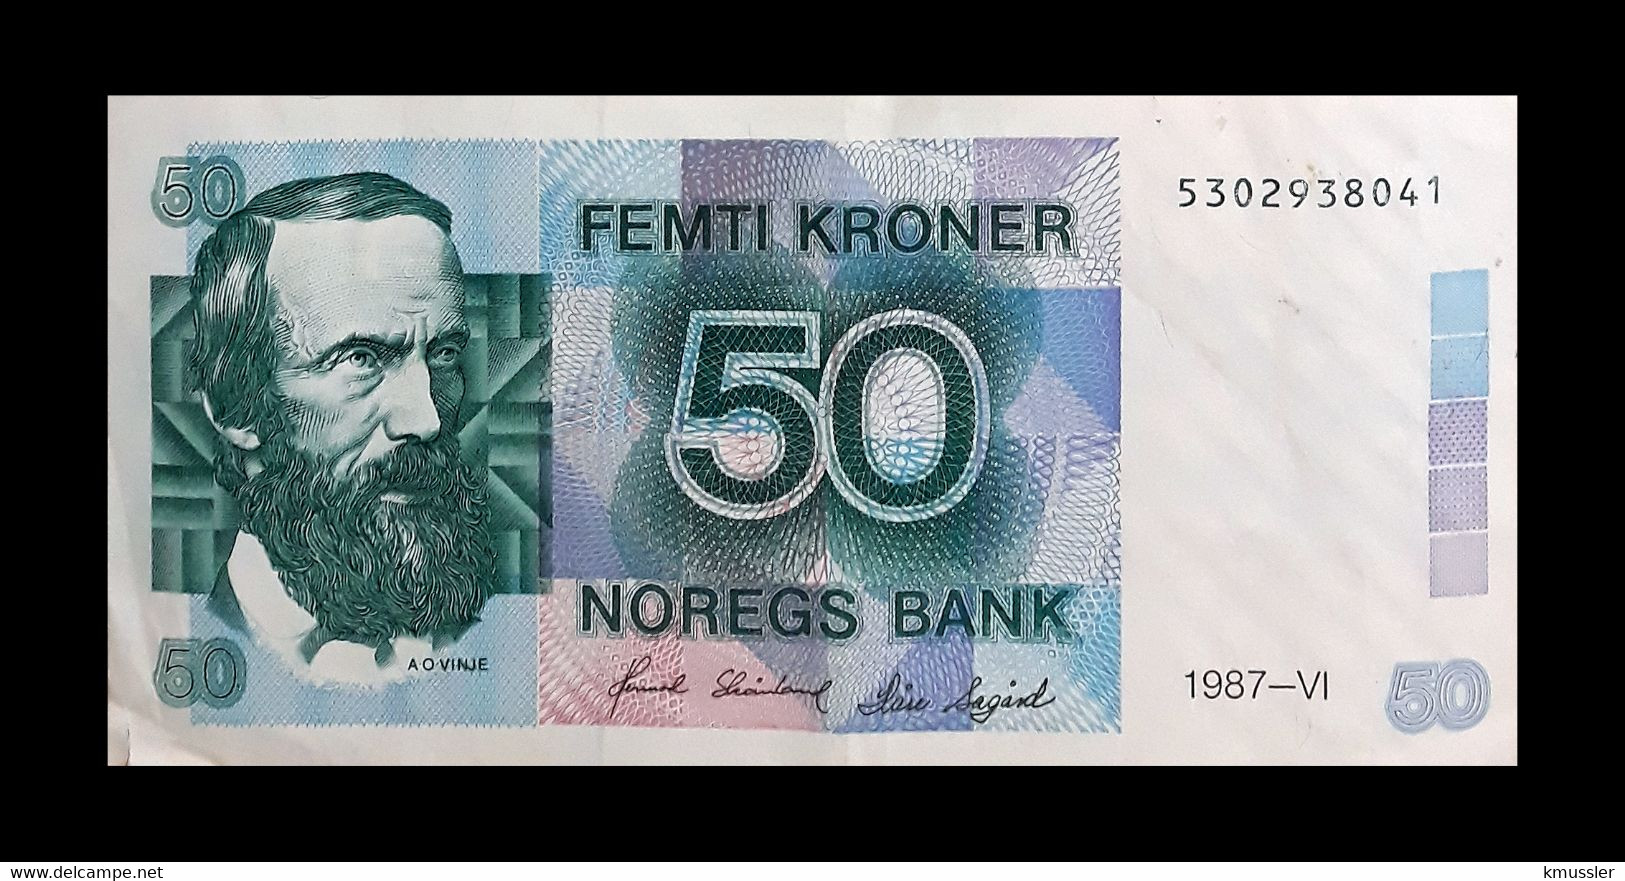 # # # Banknote Norwegen (Norway) 50 Kroner 1986 UNC # # # - Norvège